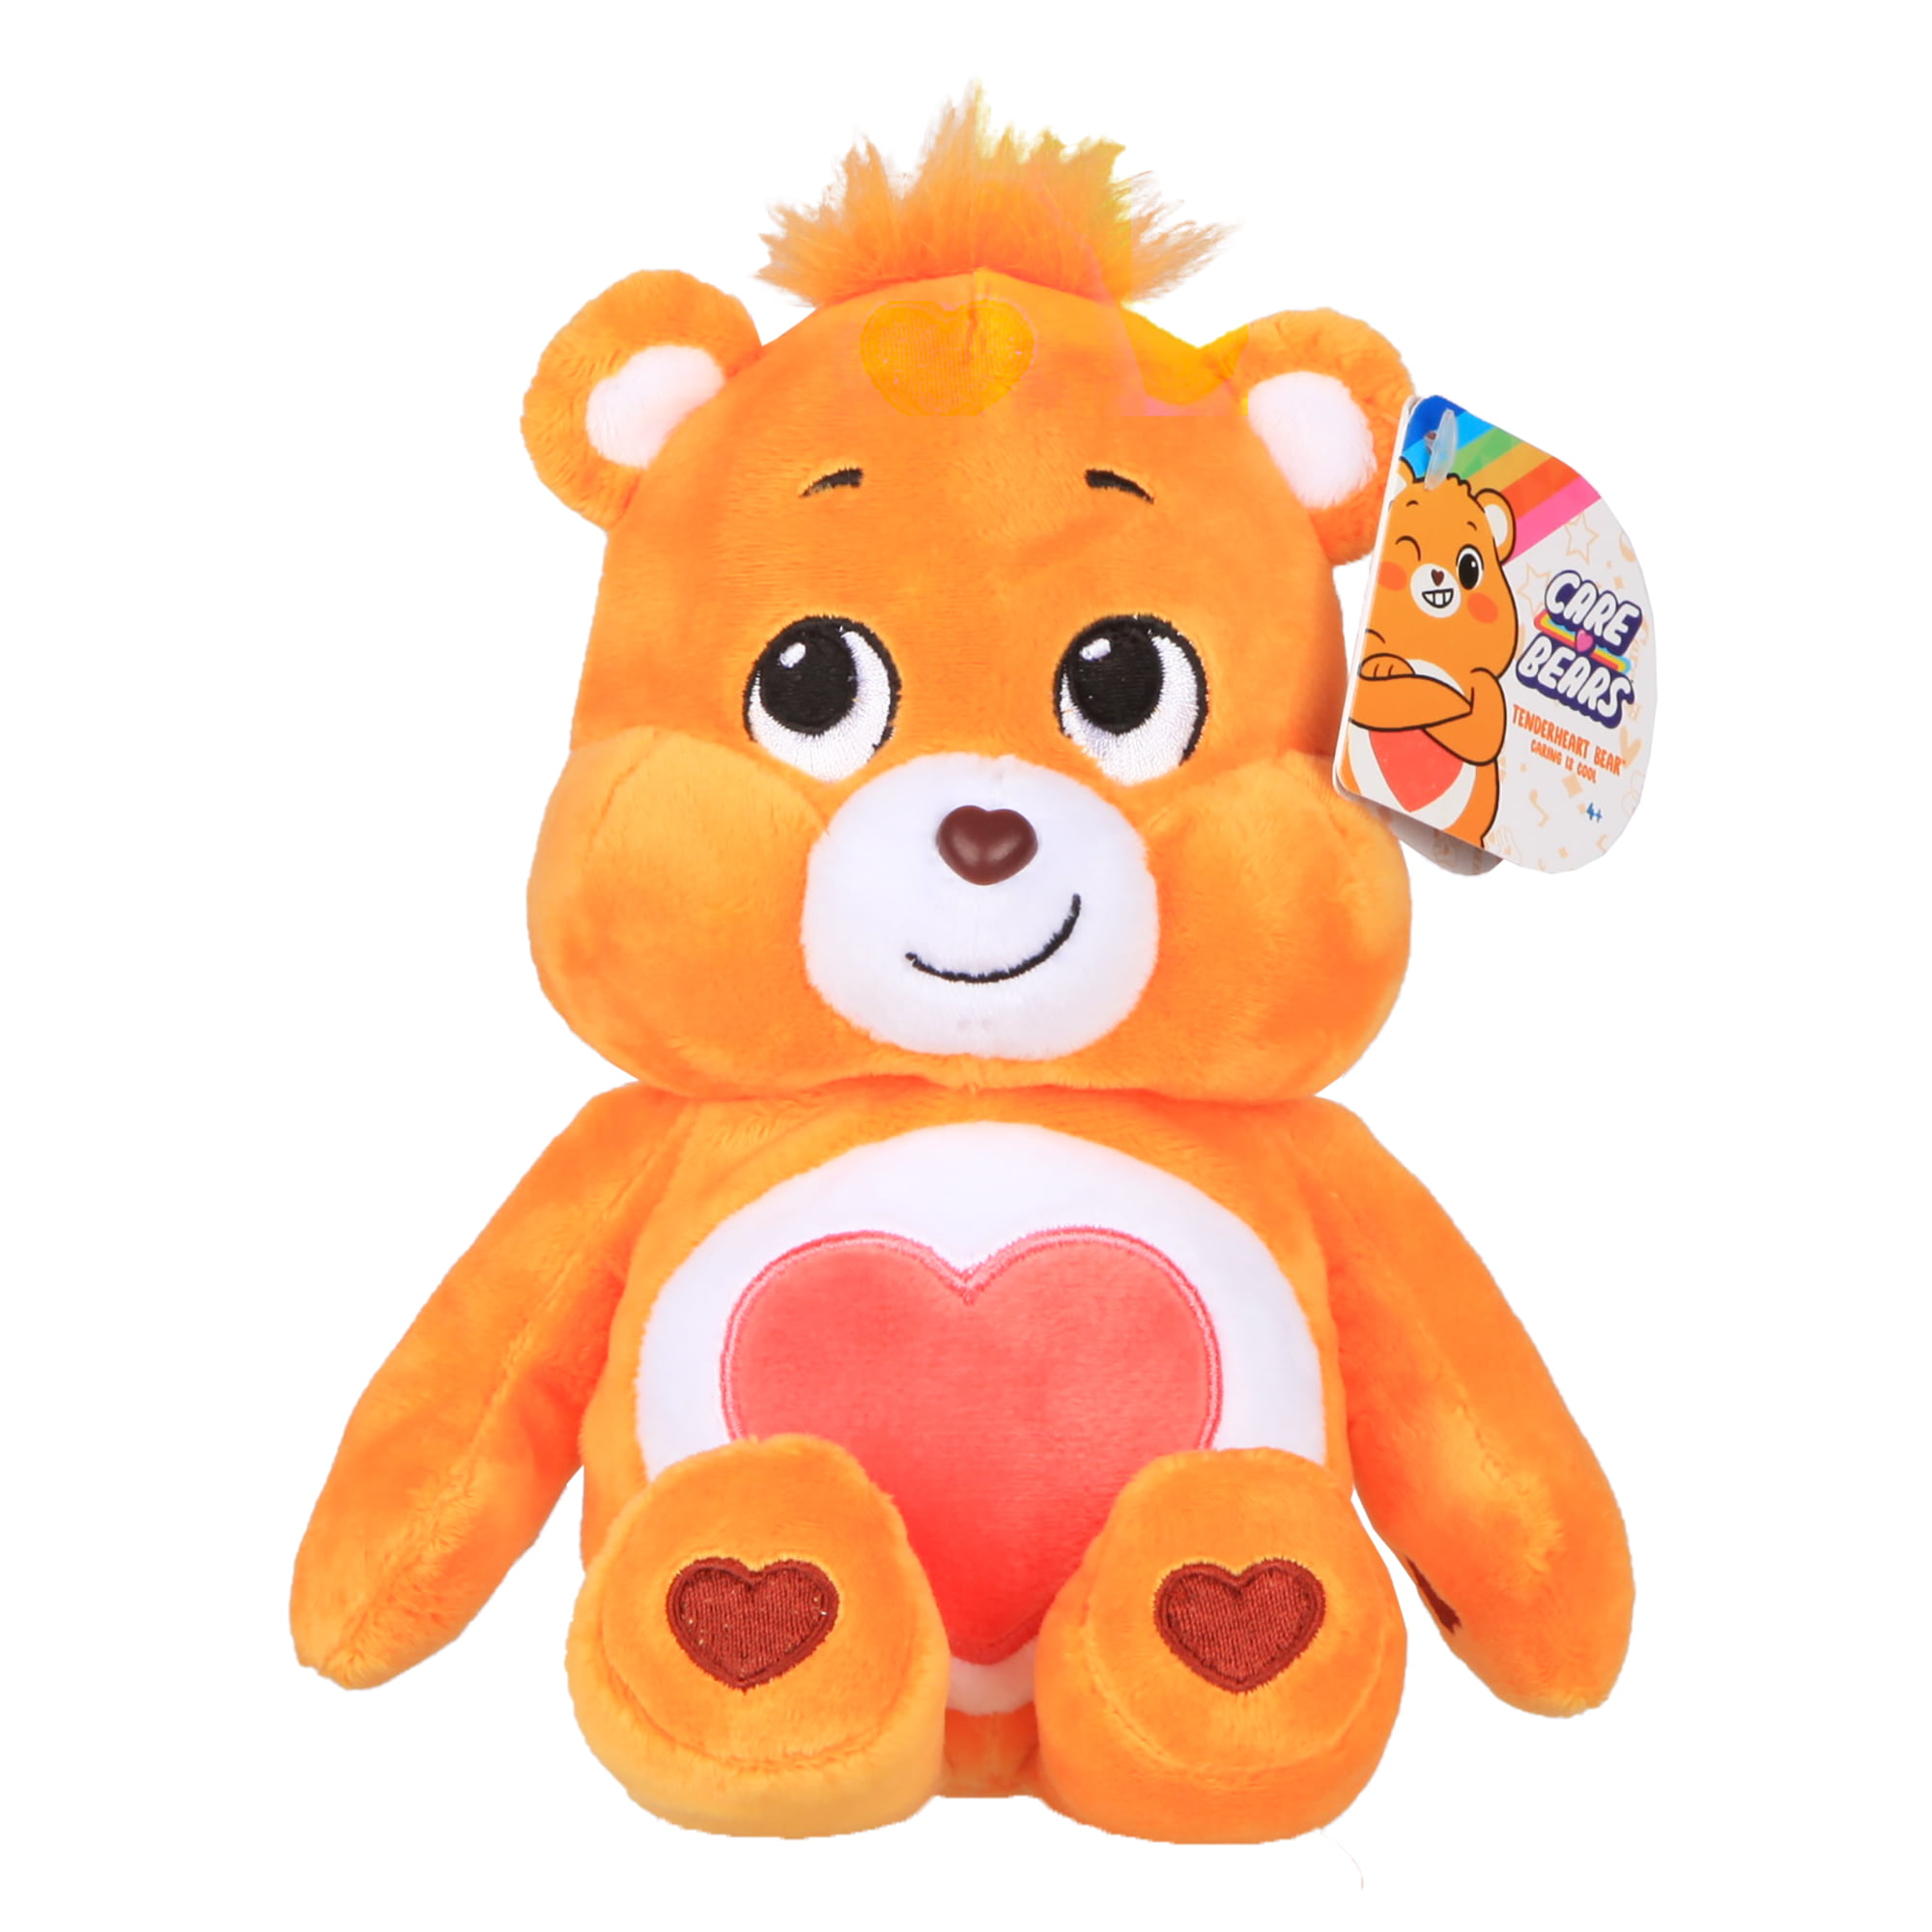 NEW 2020 Care Bears 9" Bean Plush Soft Huggable GRUMPY BEAR 